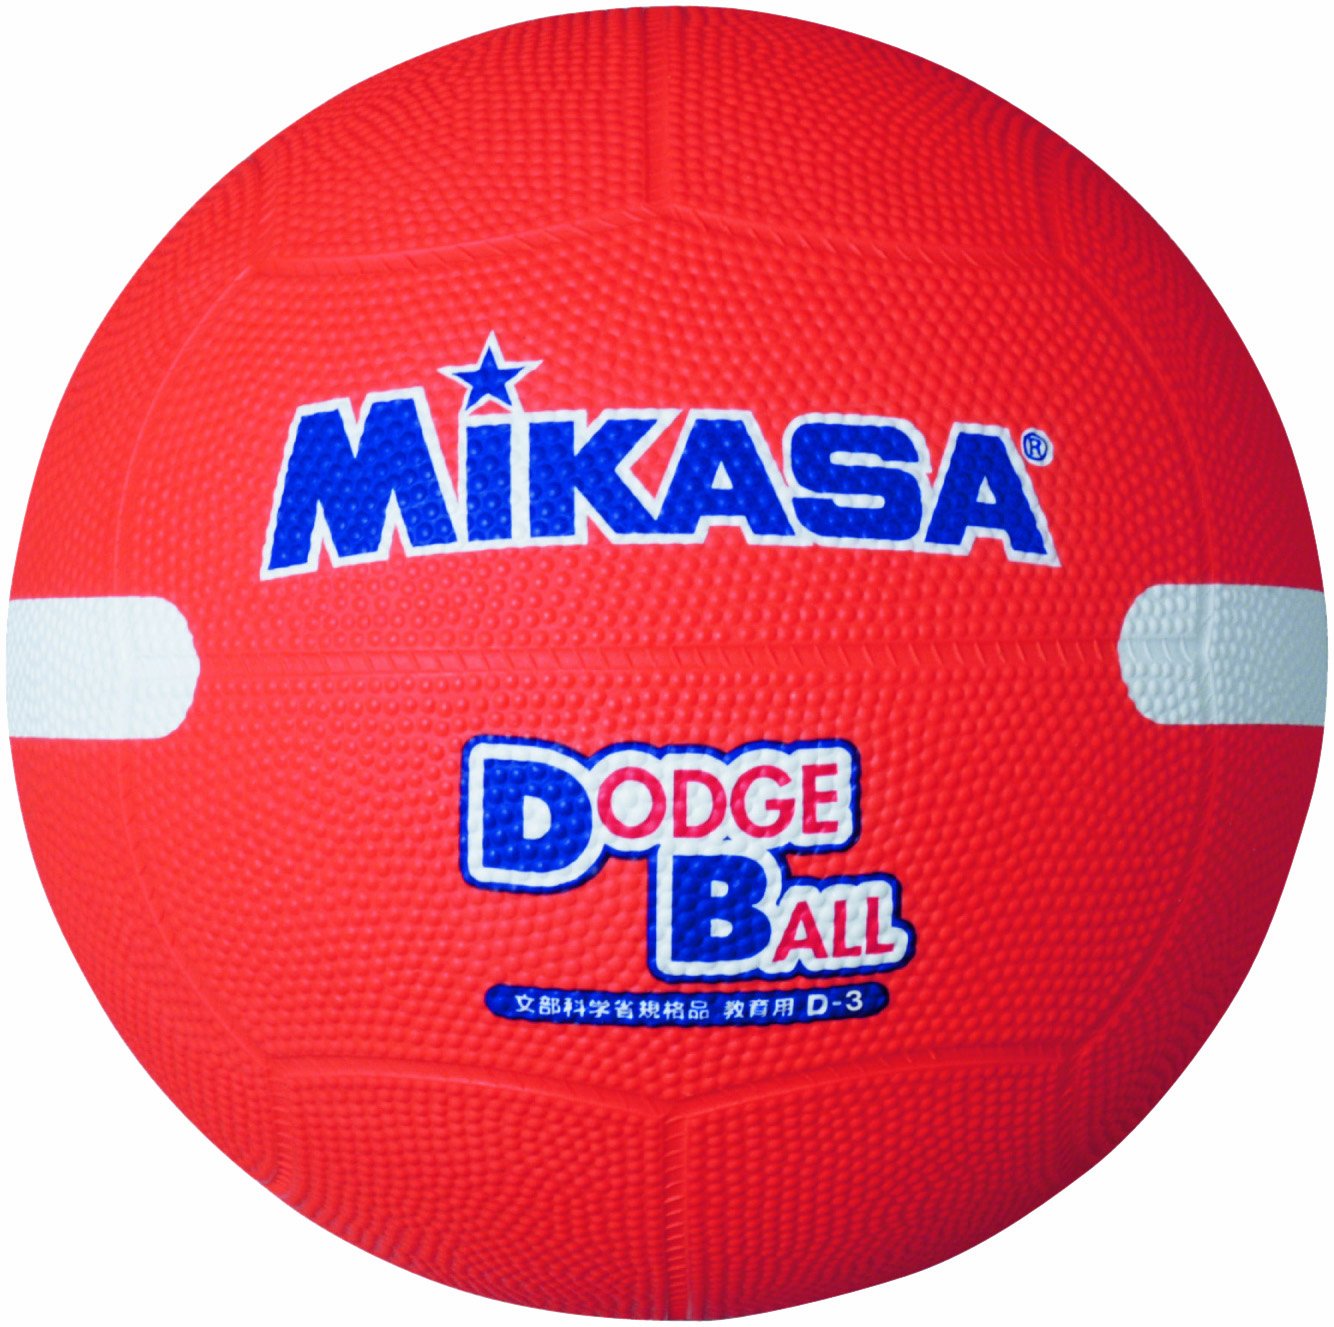 ドッジボールのボールおすすめ人気ランキングtop16 21最新版 Rank1 ランク1 人気ランキングまとめサイト 国内最大級